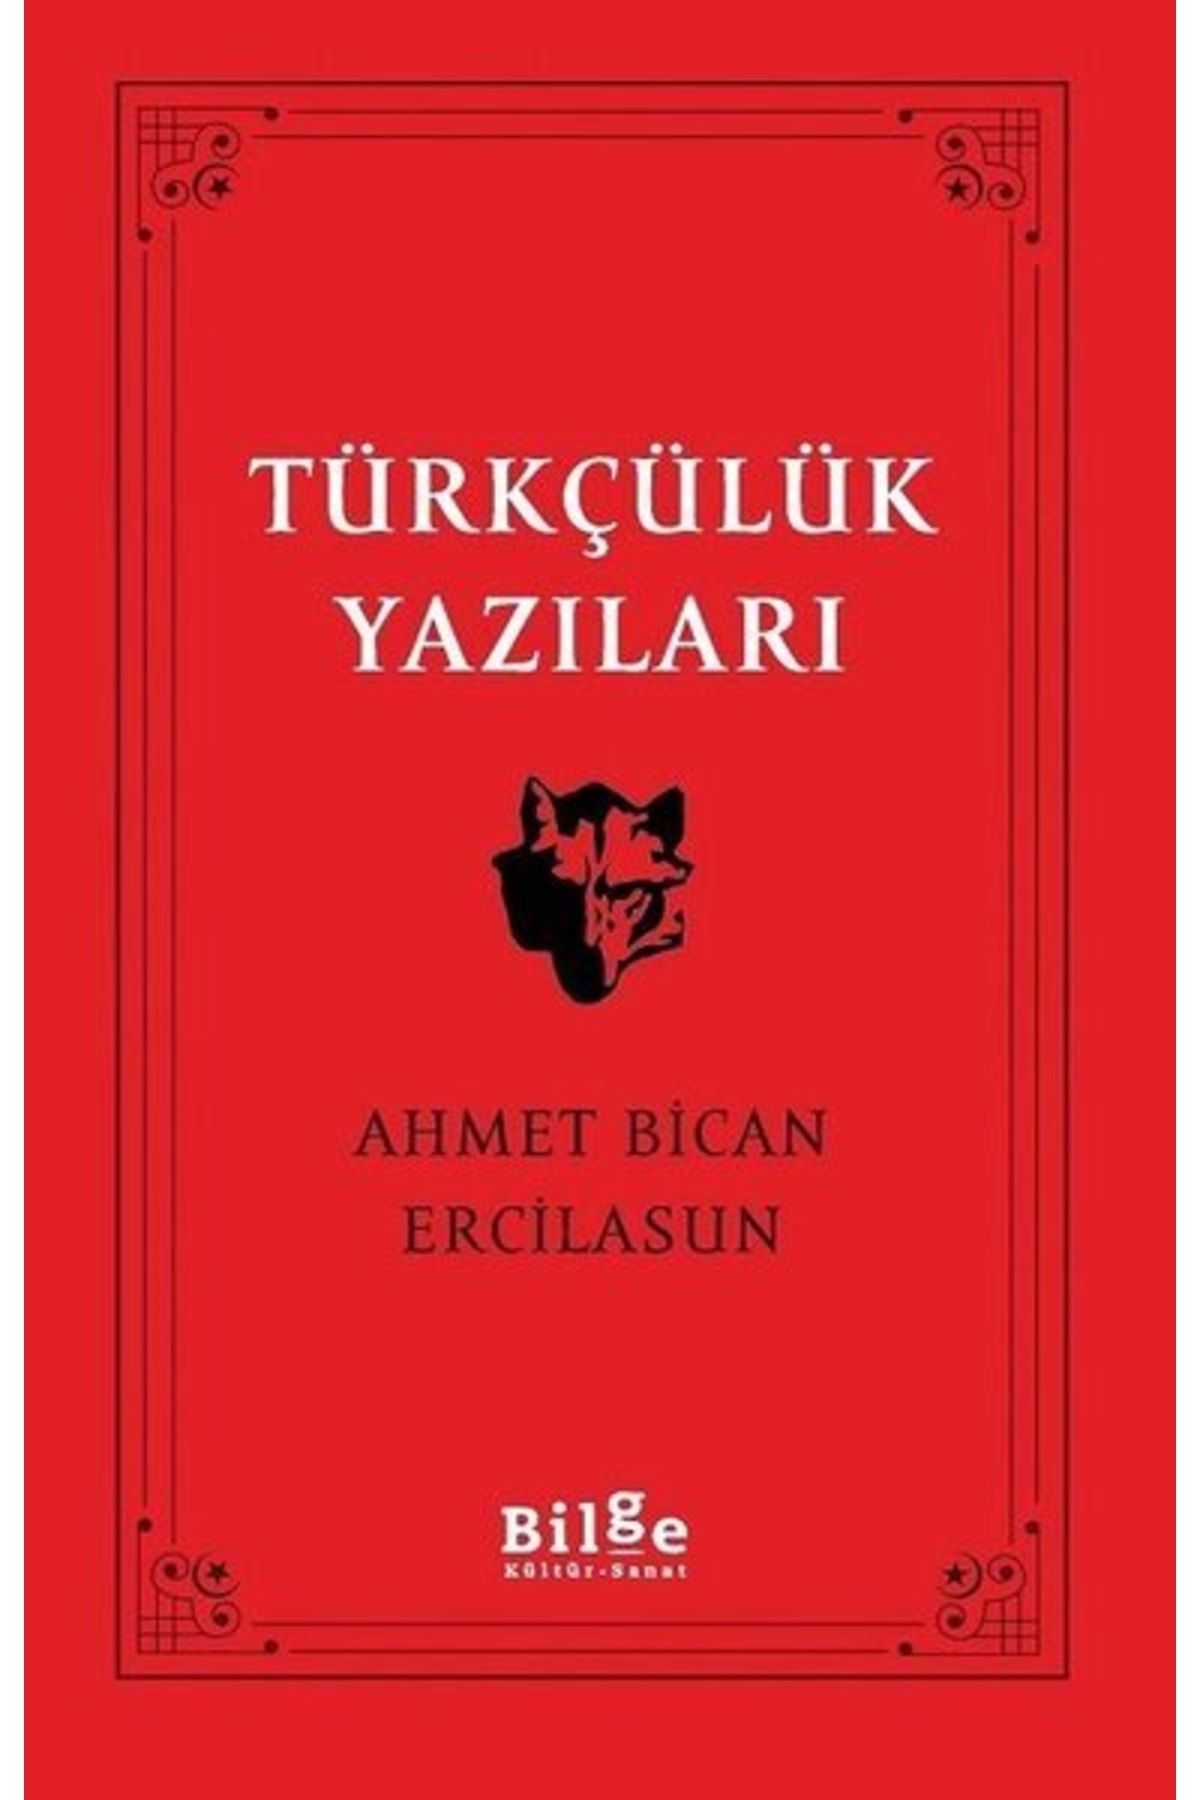 Bilge Kültür Sanat Türkçülük Yazıları